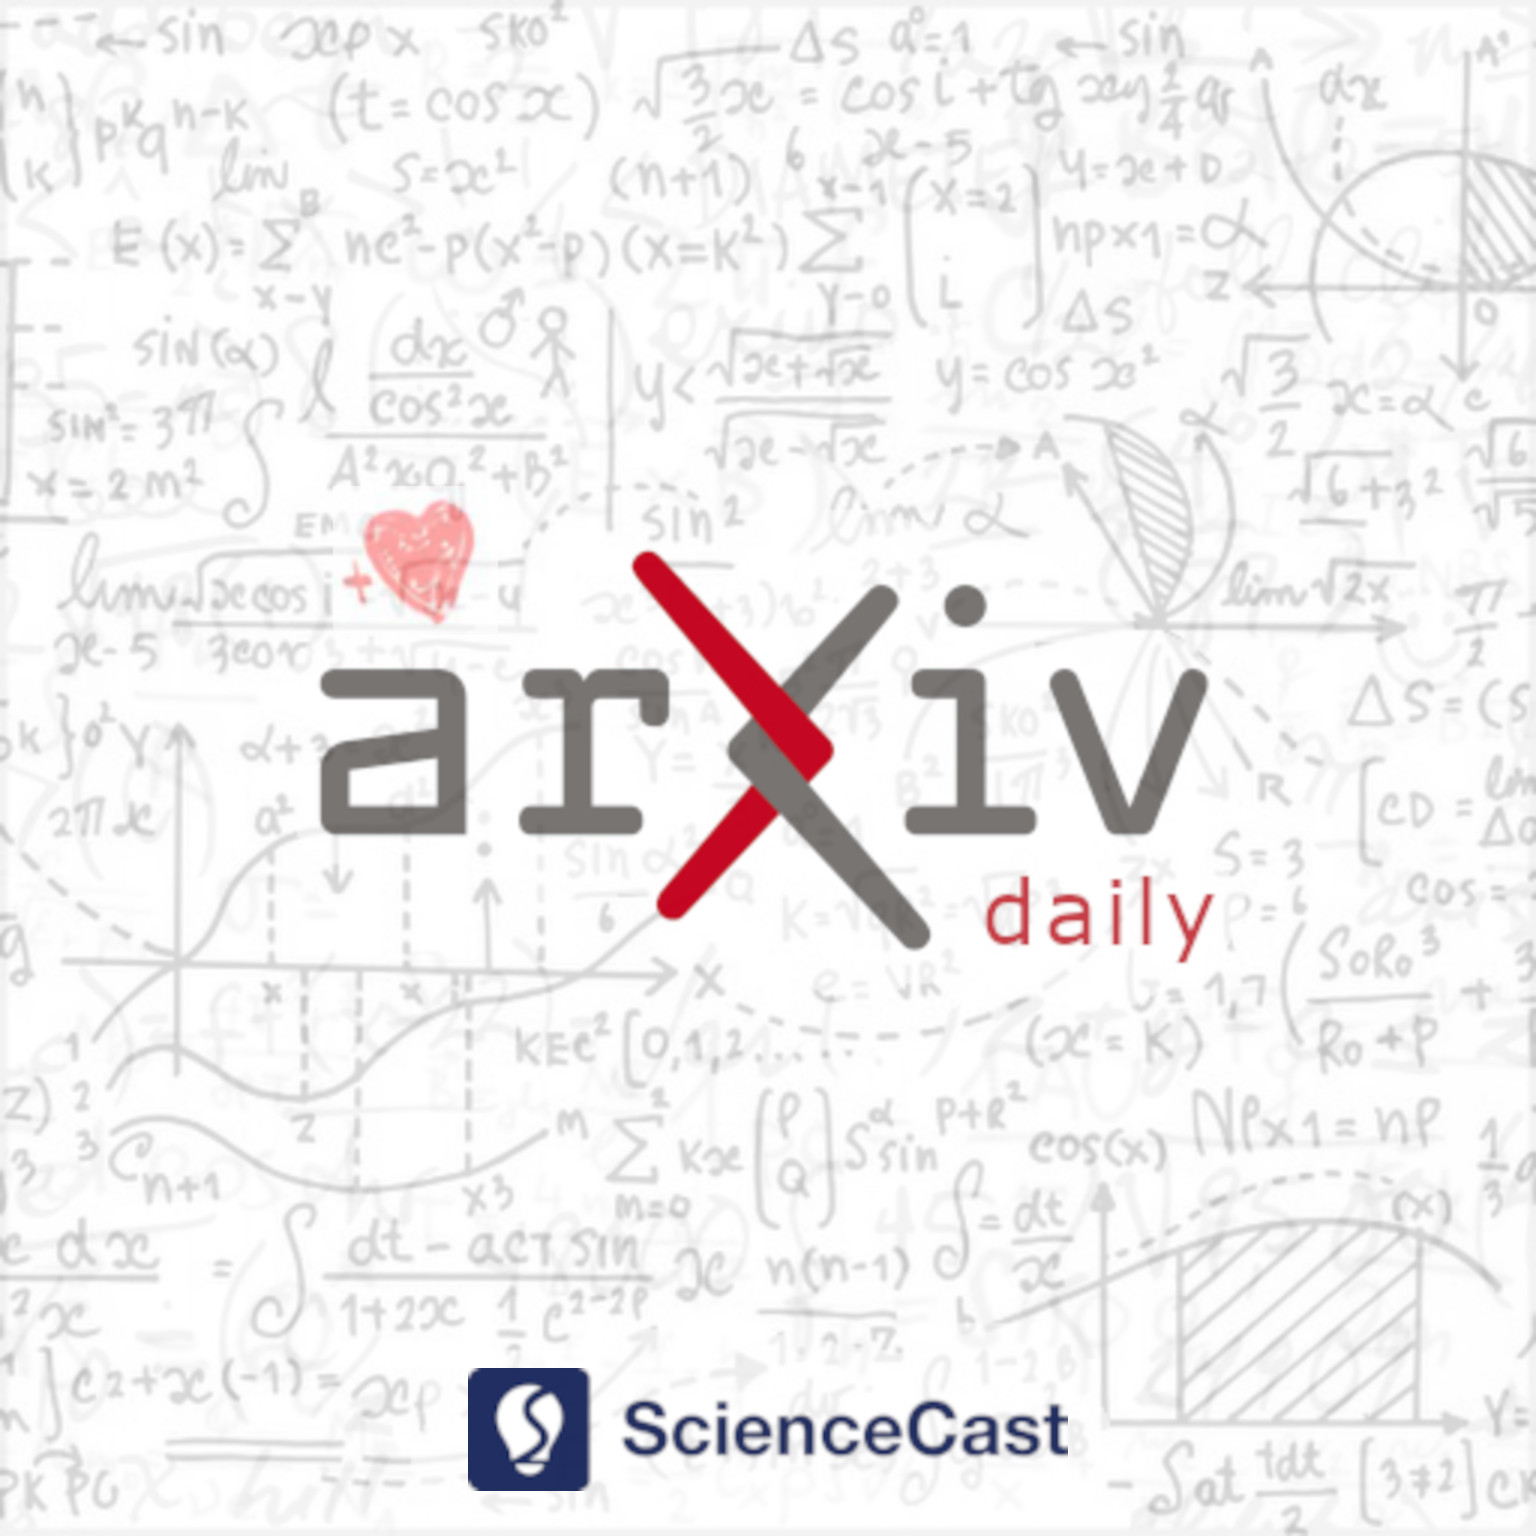 arXiv daily